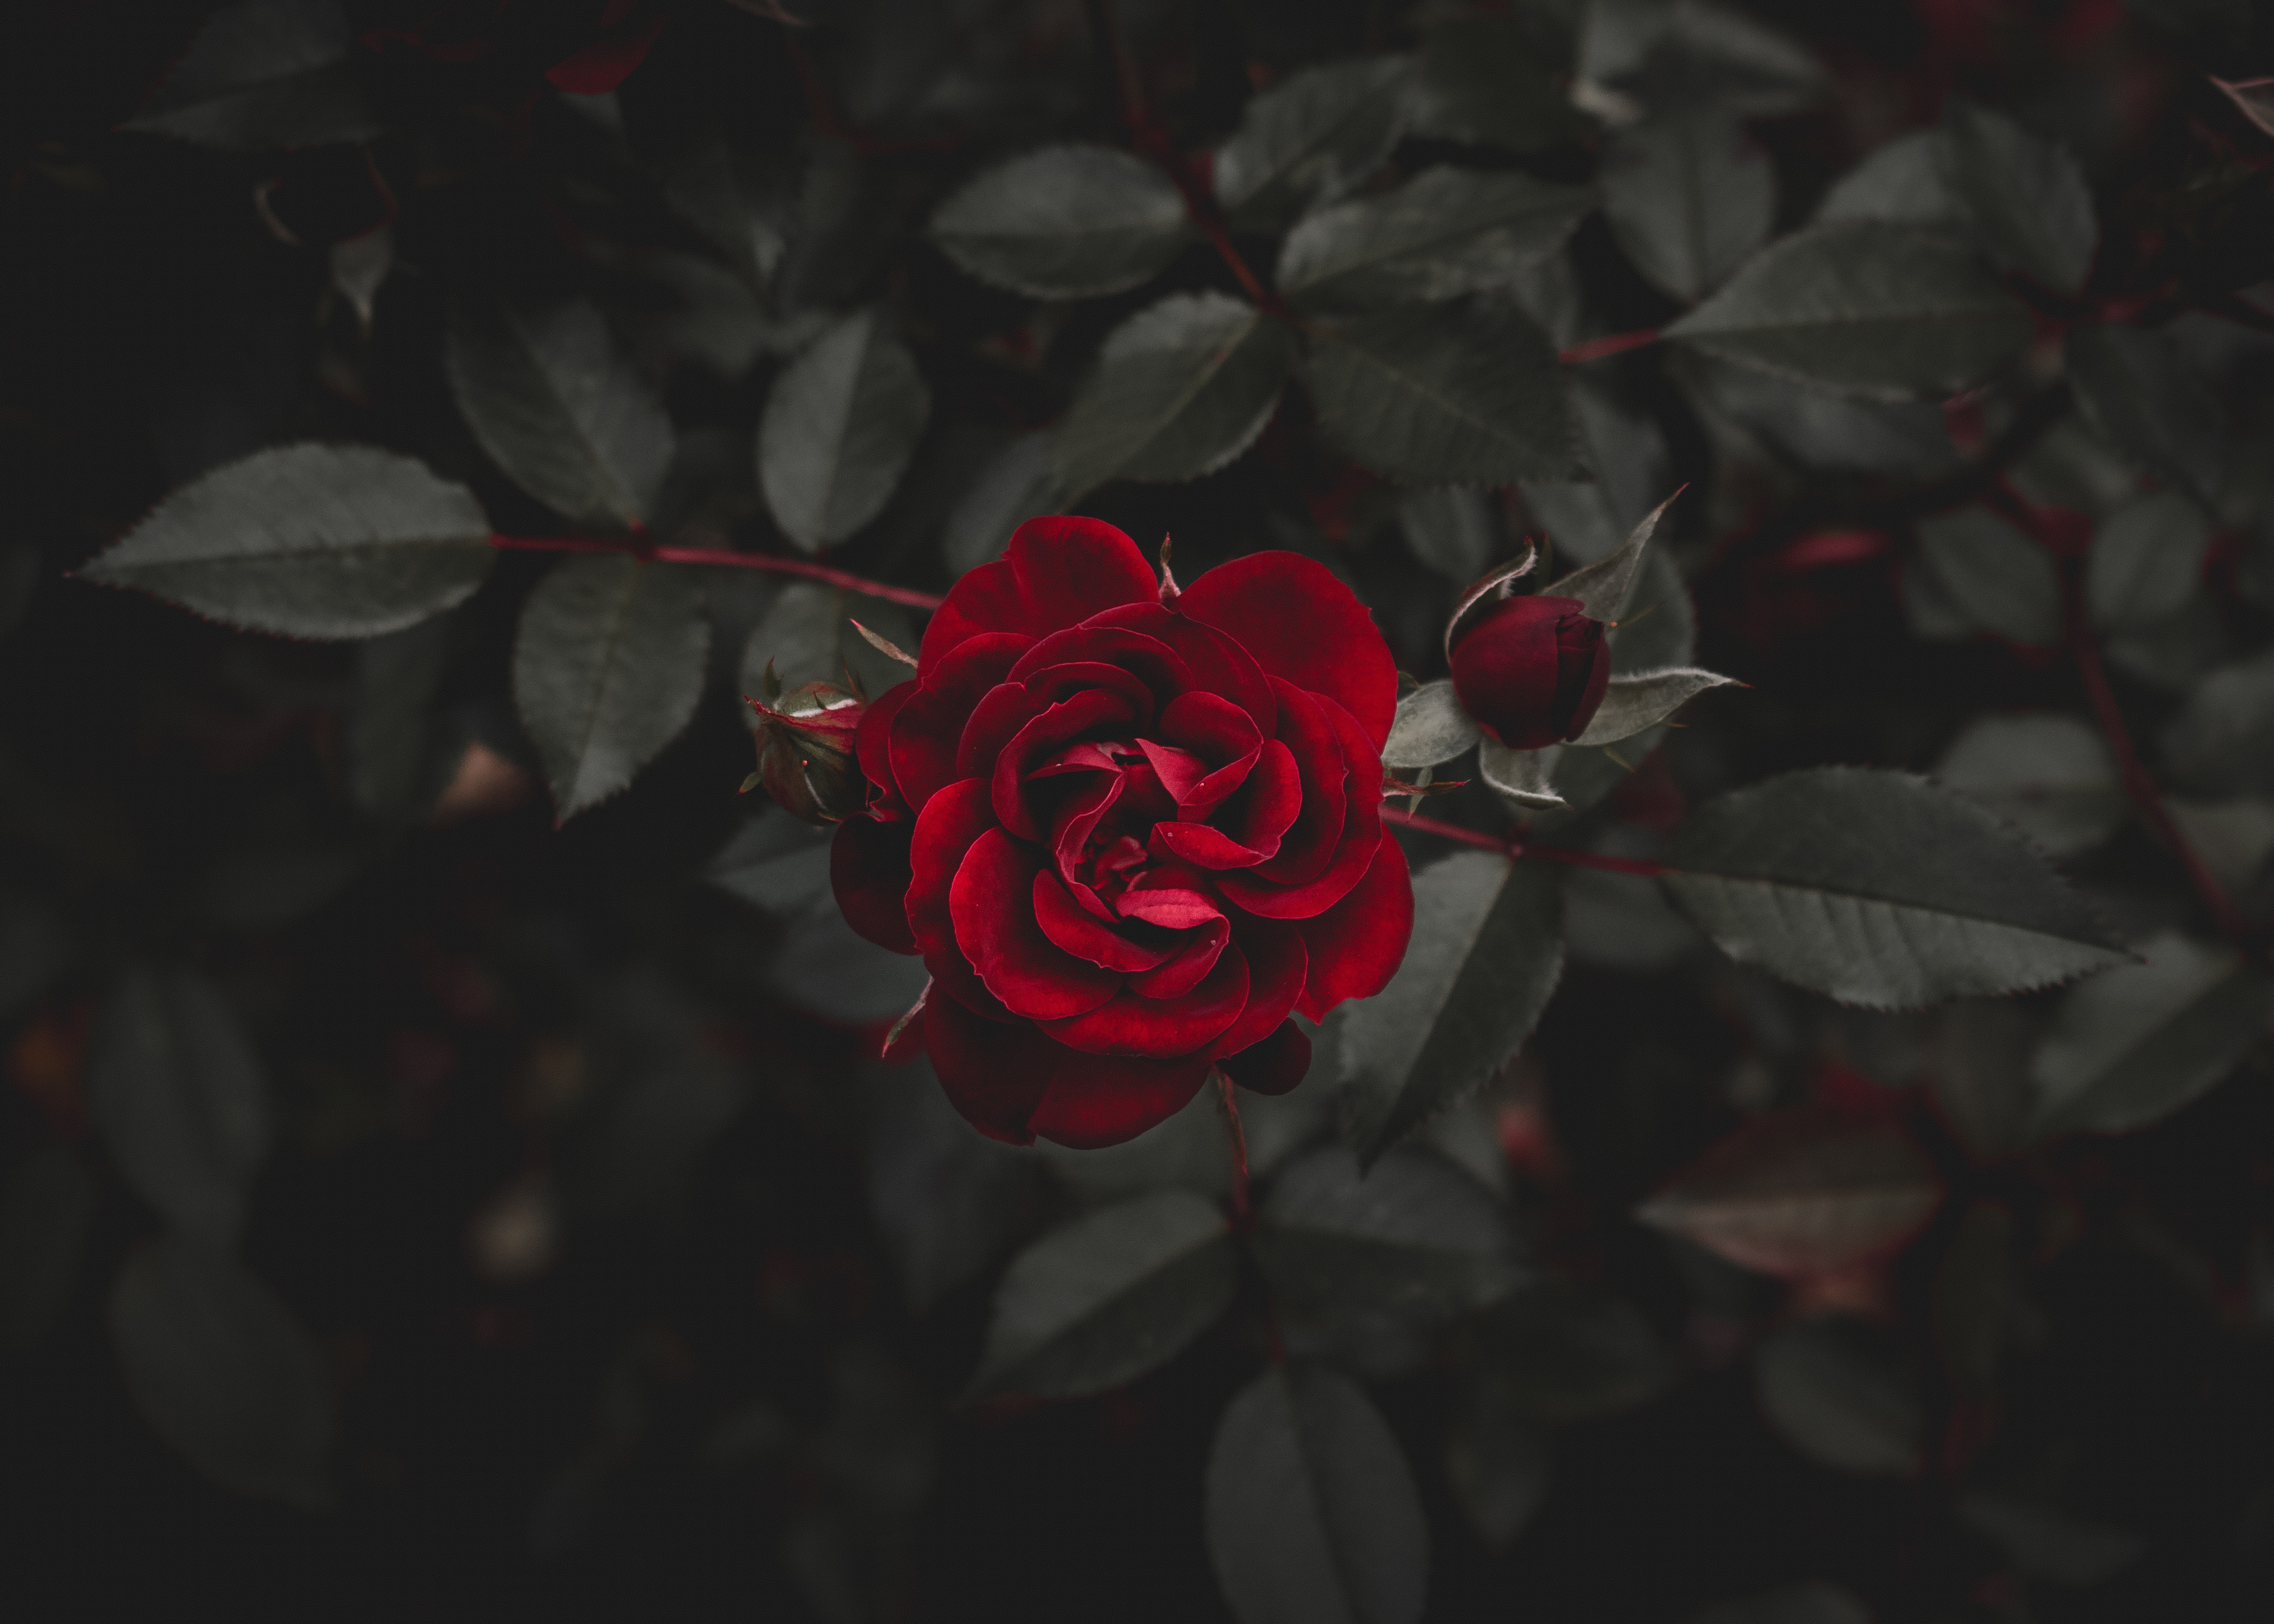 rose, flowers, rose flower, flower, red, bud 2160p